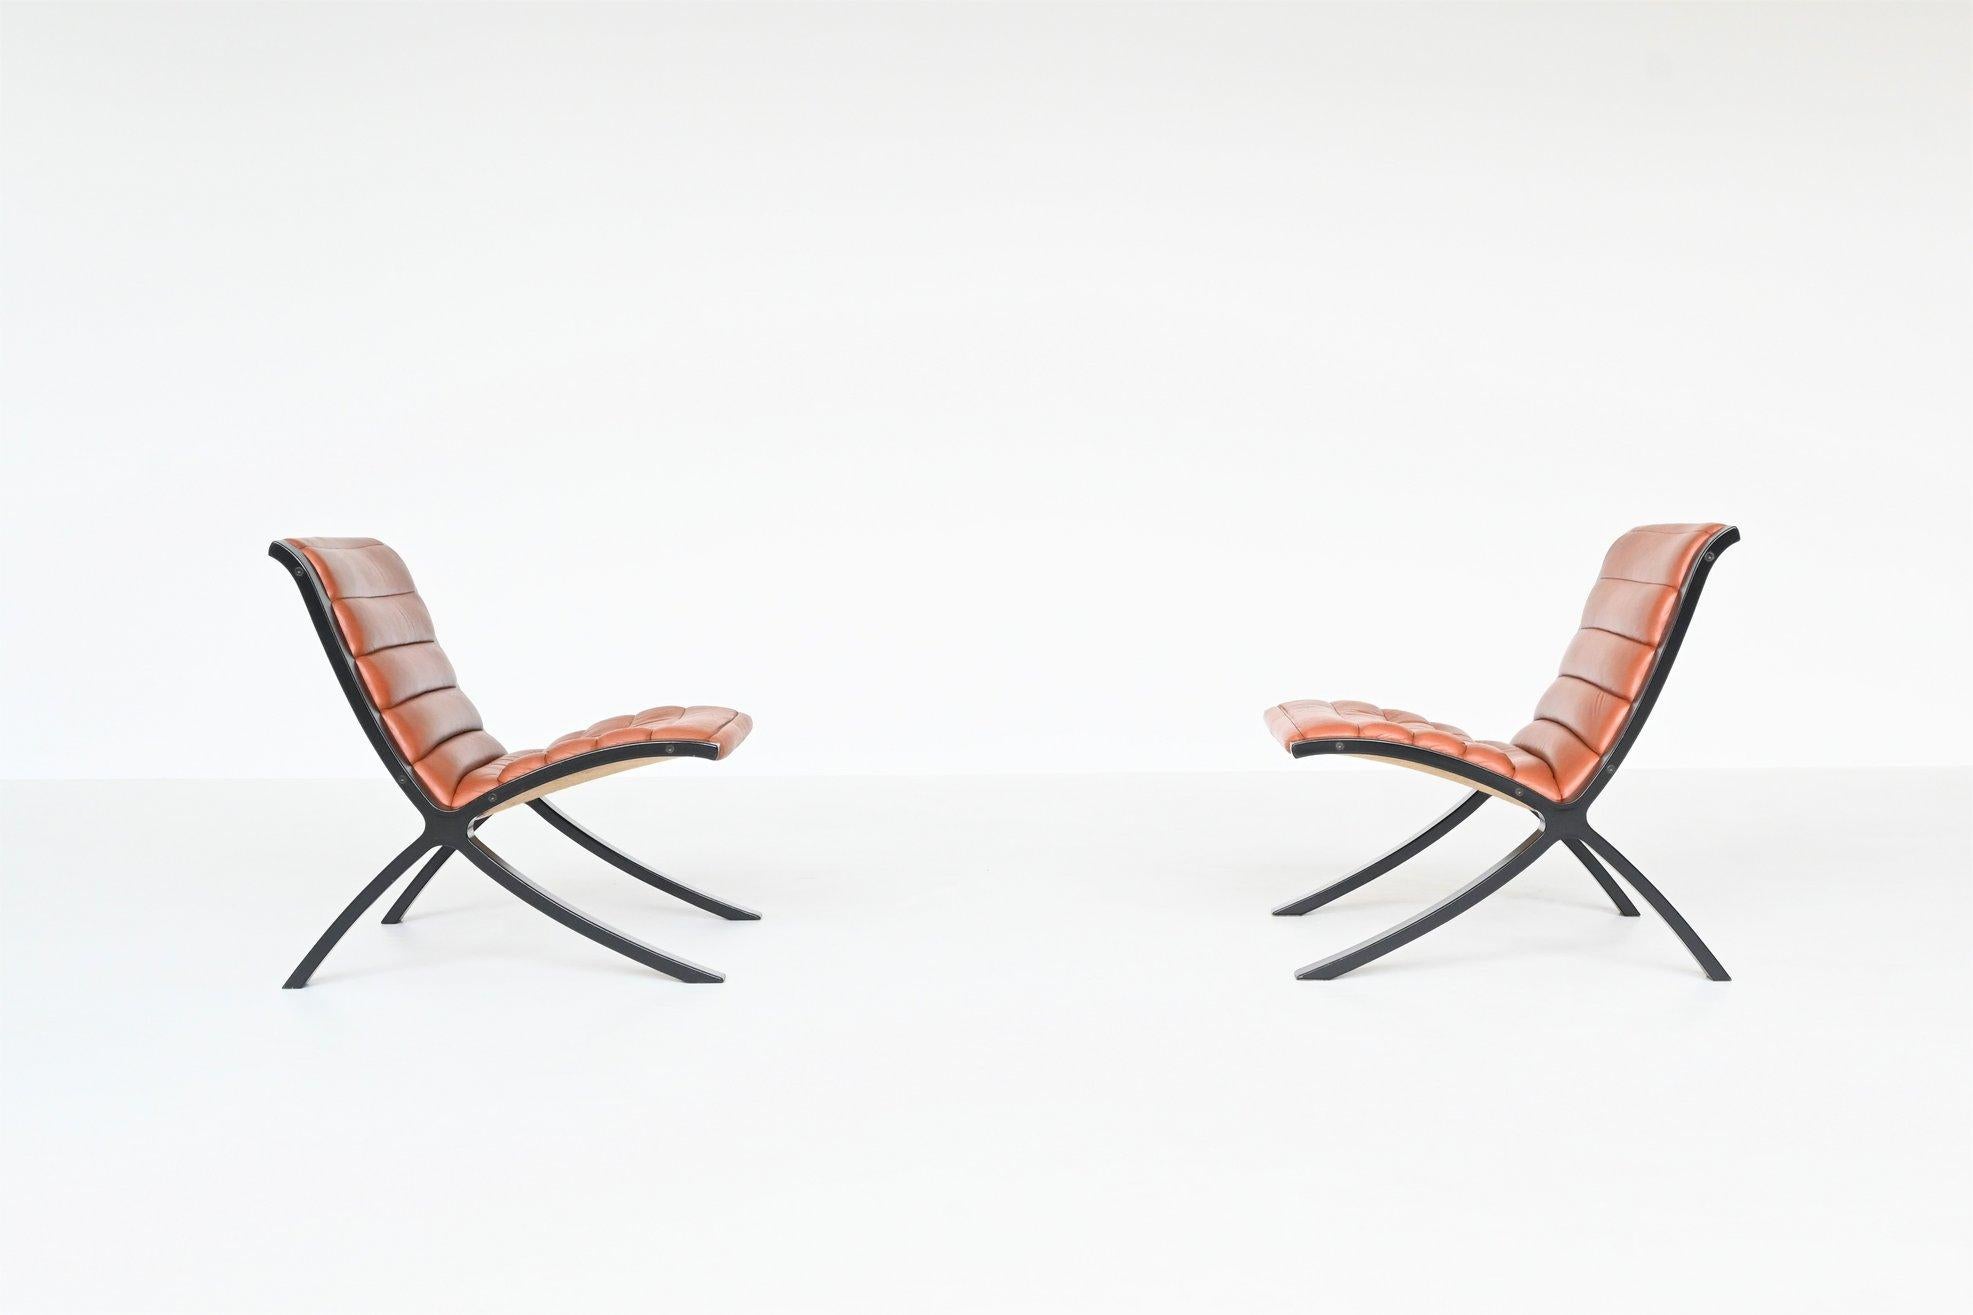 Fantastisch geformtes Paar Loungesessel Modell X-Chair, entworfen von Peter Hvidt & Orla Molgaard-Nielsen für Fritz Hansen, Dänemark 1979. Diese skulpturalen Stühle bestehen aus einem schwarz lackierten Gestell aus Buchensperrholz und einem